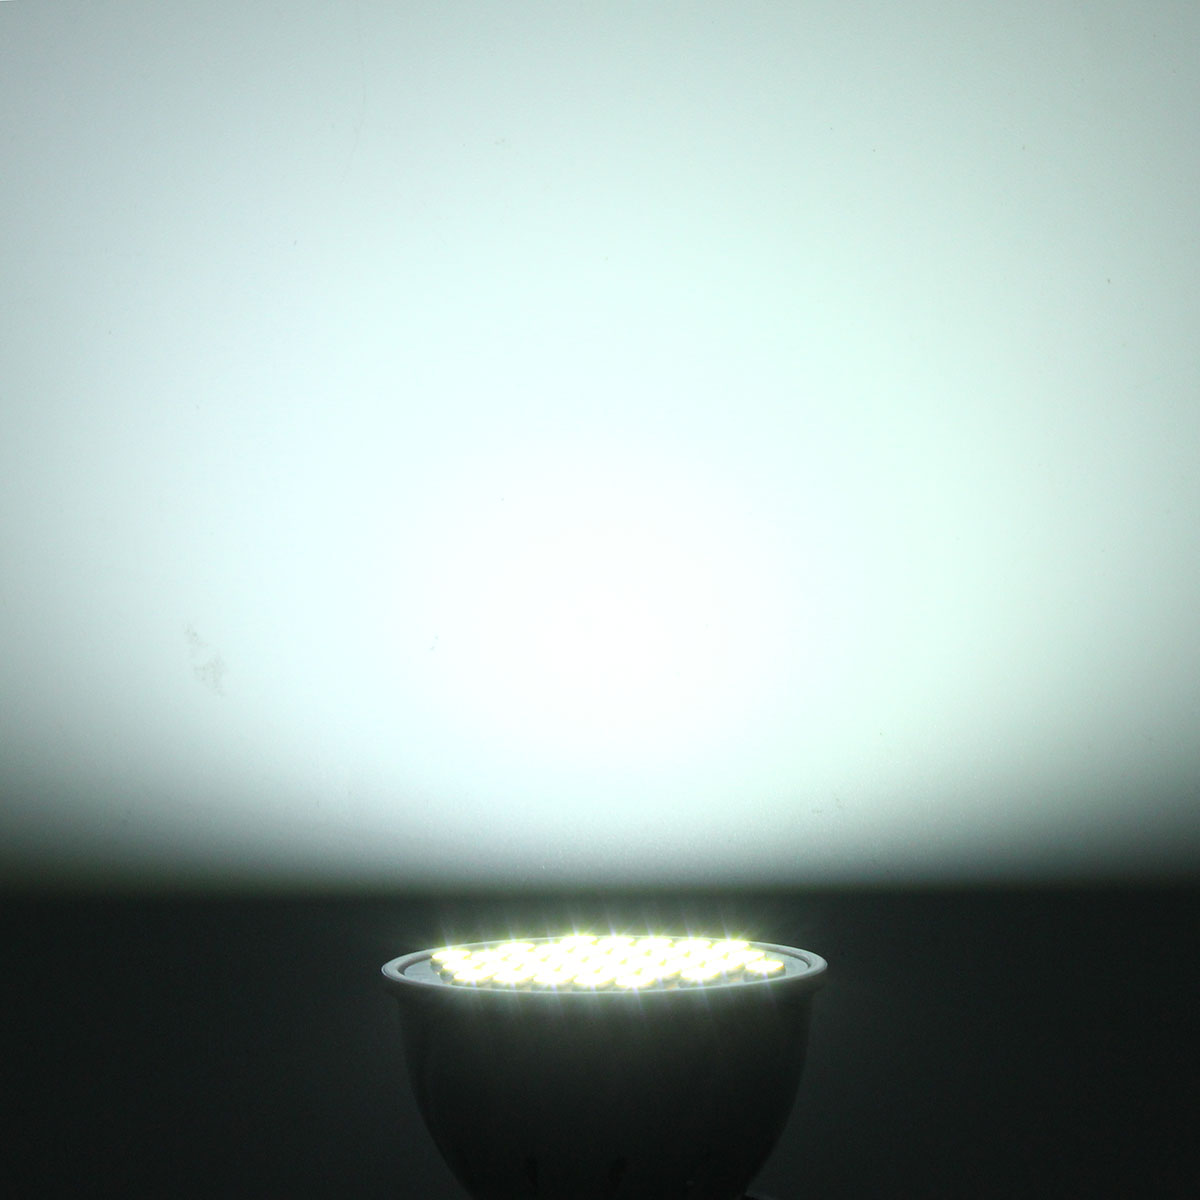 E27-E14-GU10-MR16-4W-5730-SMD-33-400LM-Pure-White-Warm-White-LED-Spot-Lightt-Lamp-Bulb-AC85-265V-1139506-10